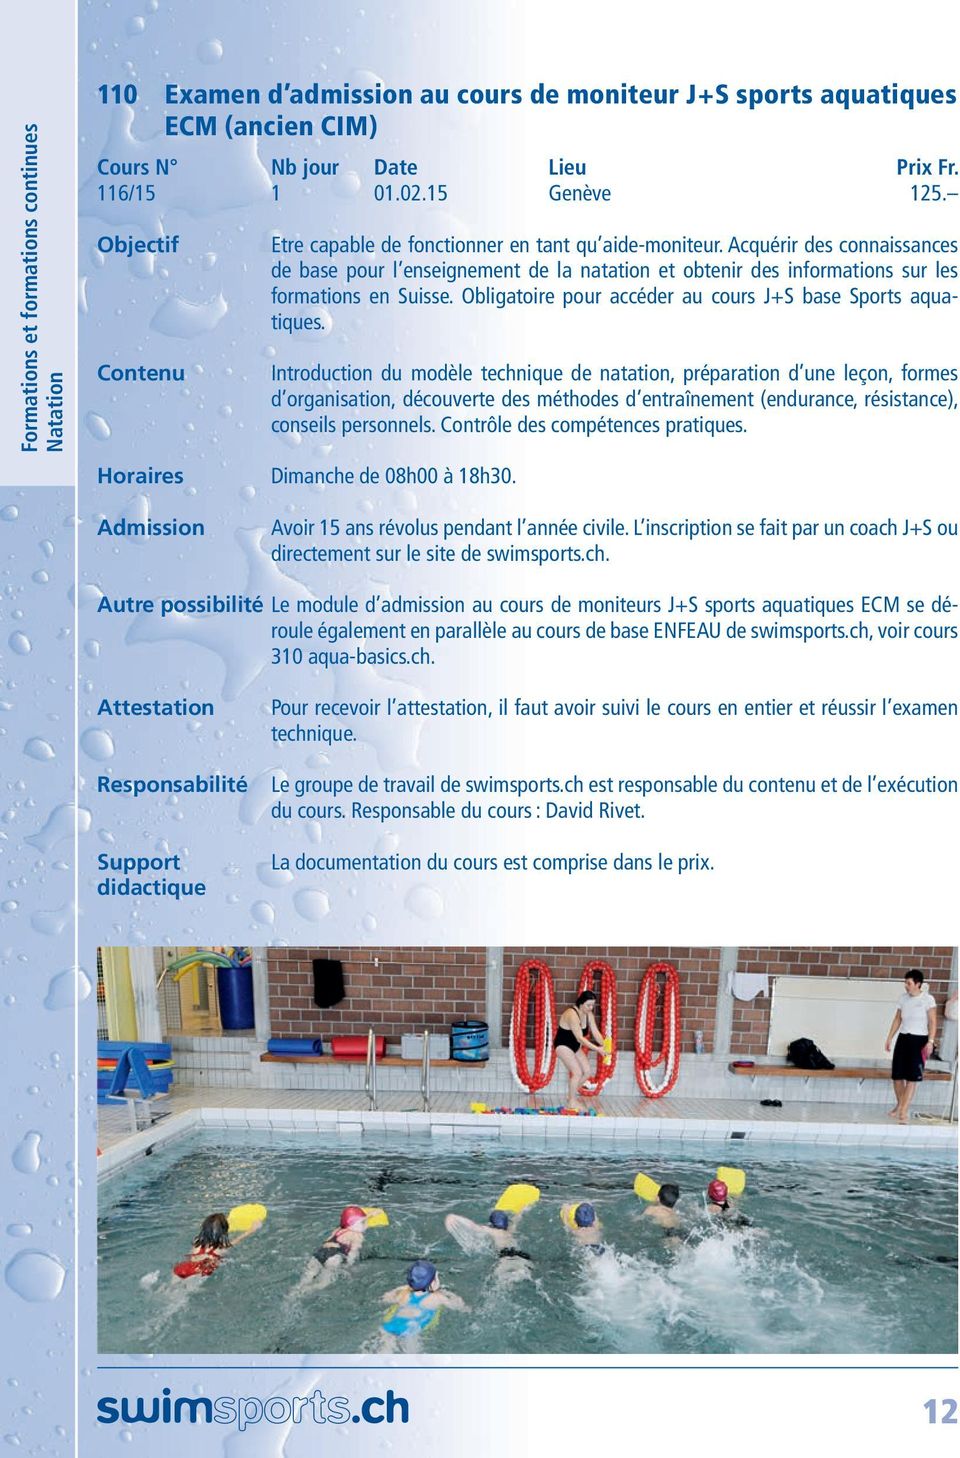 Obligatoire pour accéder au cours J+S base Sports aquatiques.